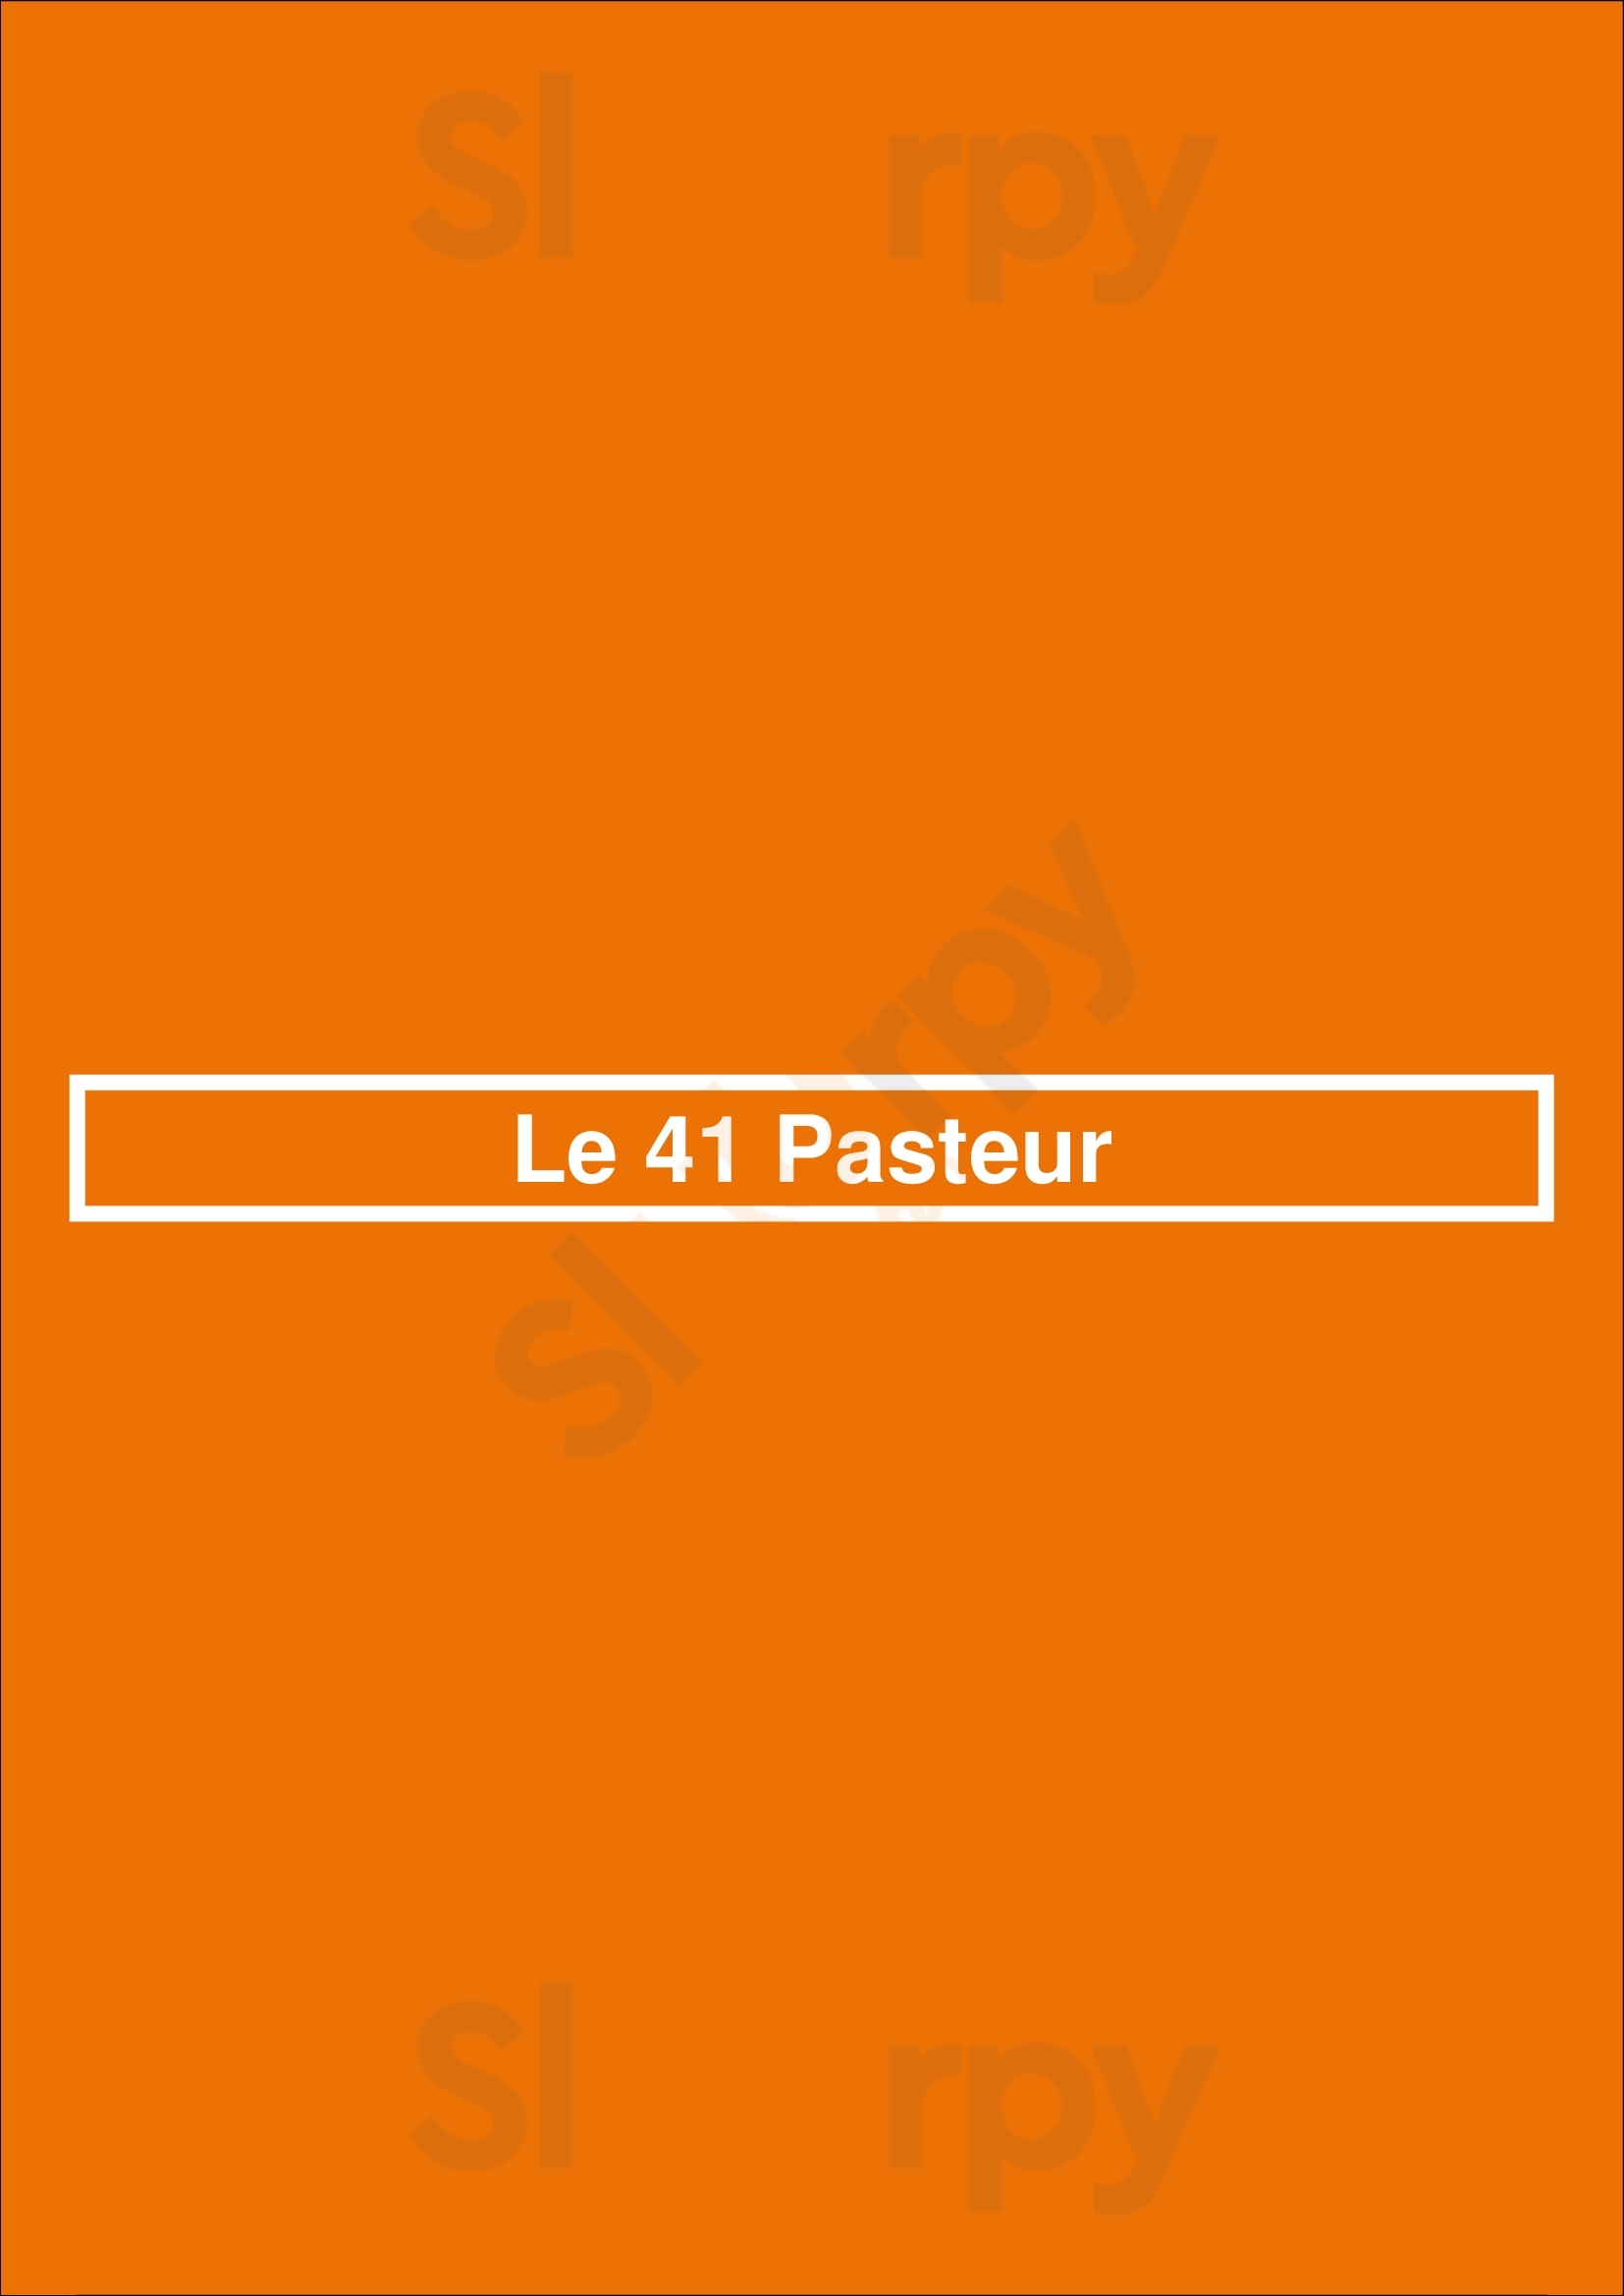 Le 41 Pasteur Paris Menu - 1